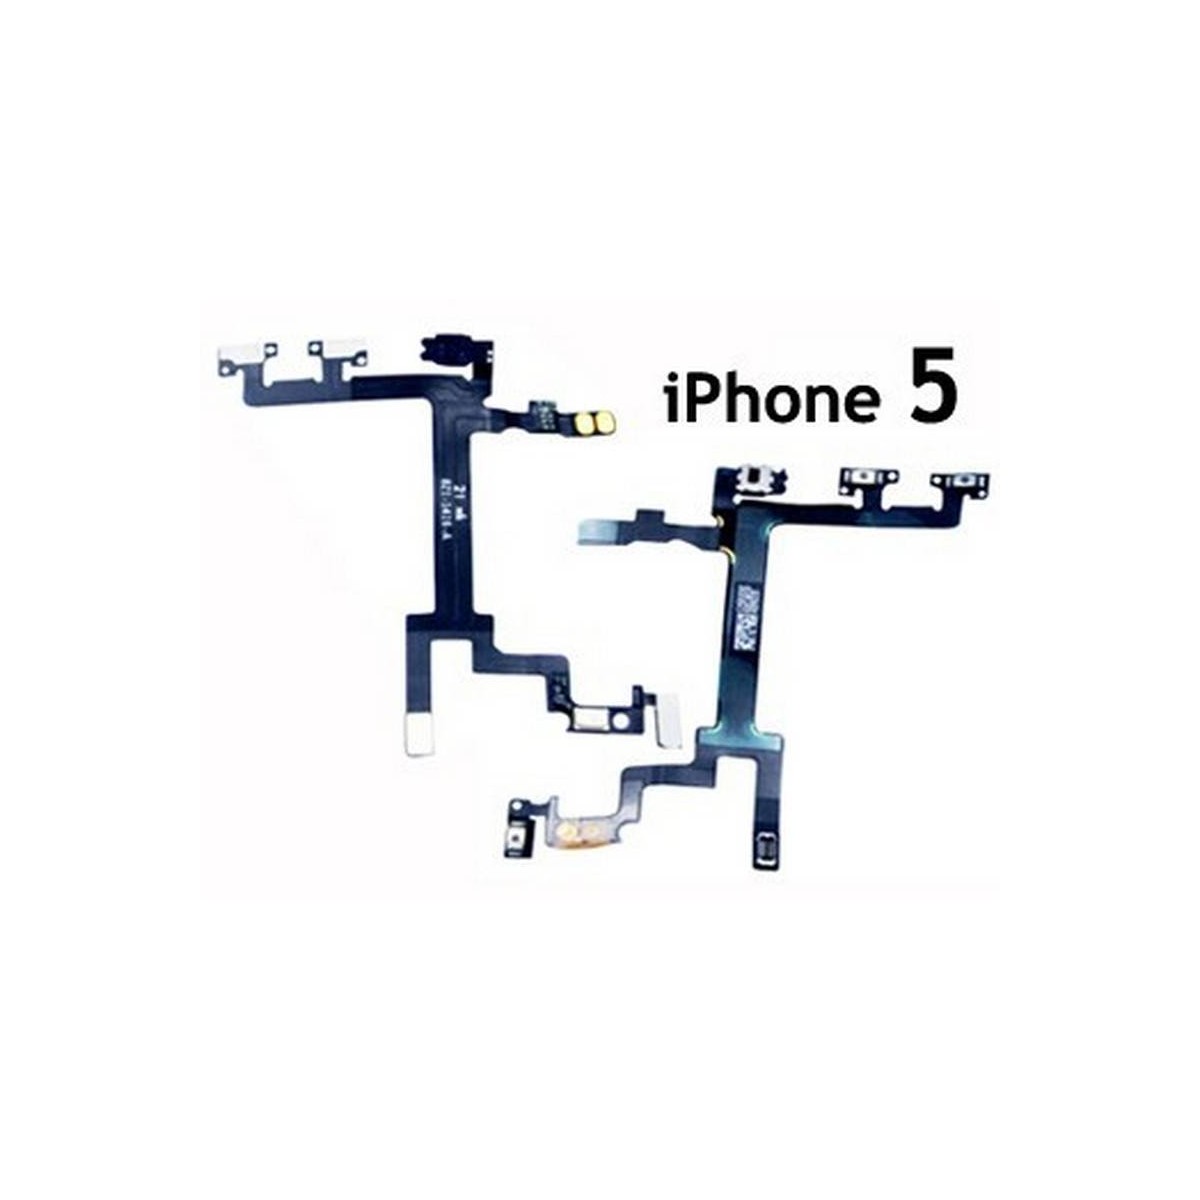 Flex de volume e ignição on/off, para iPhone 5